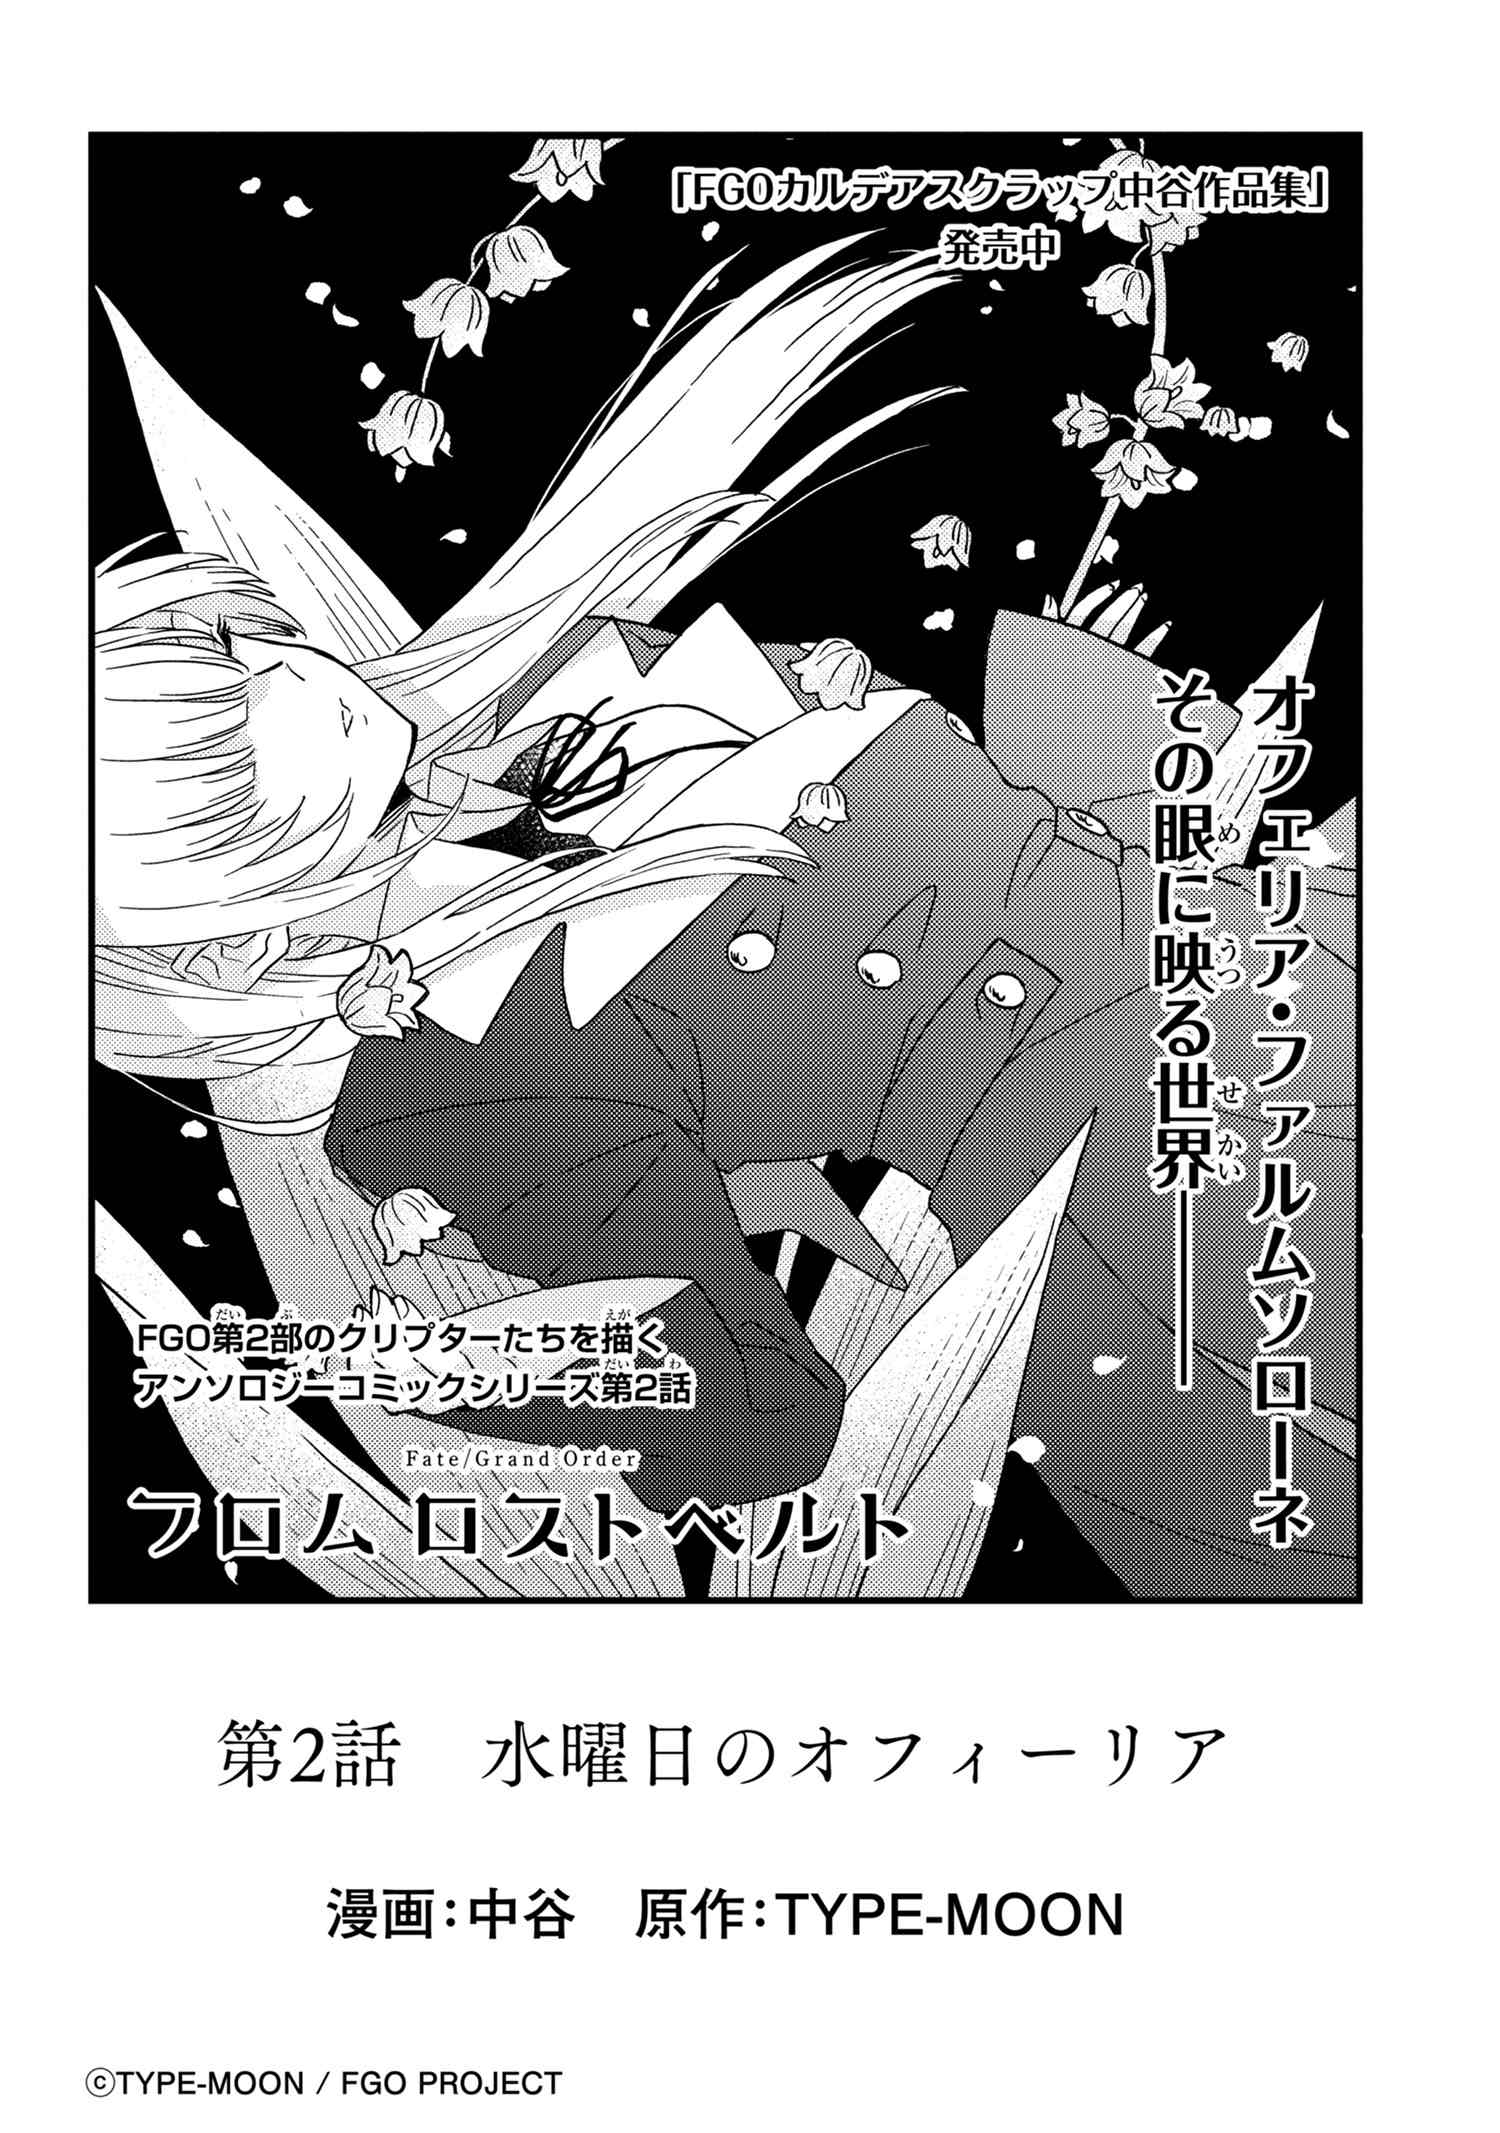 Fate Grand Order フロム ロストベルト 第2話 水曜日のオフィーリア Type Moonコミックエース 無料で漫画が読めるオンラインマガジン